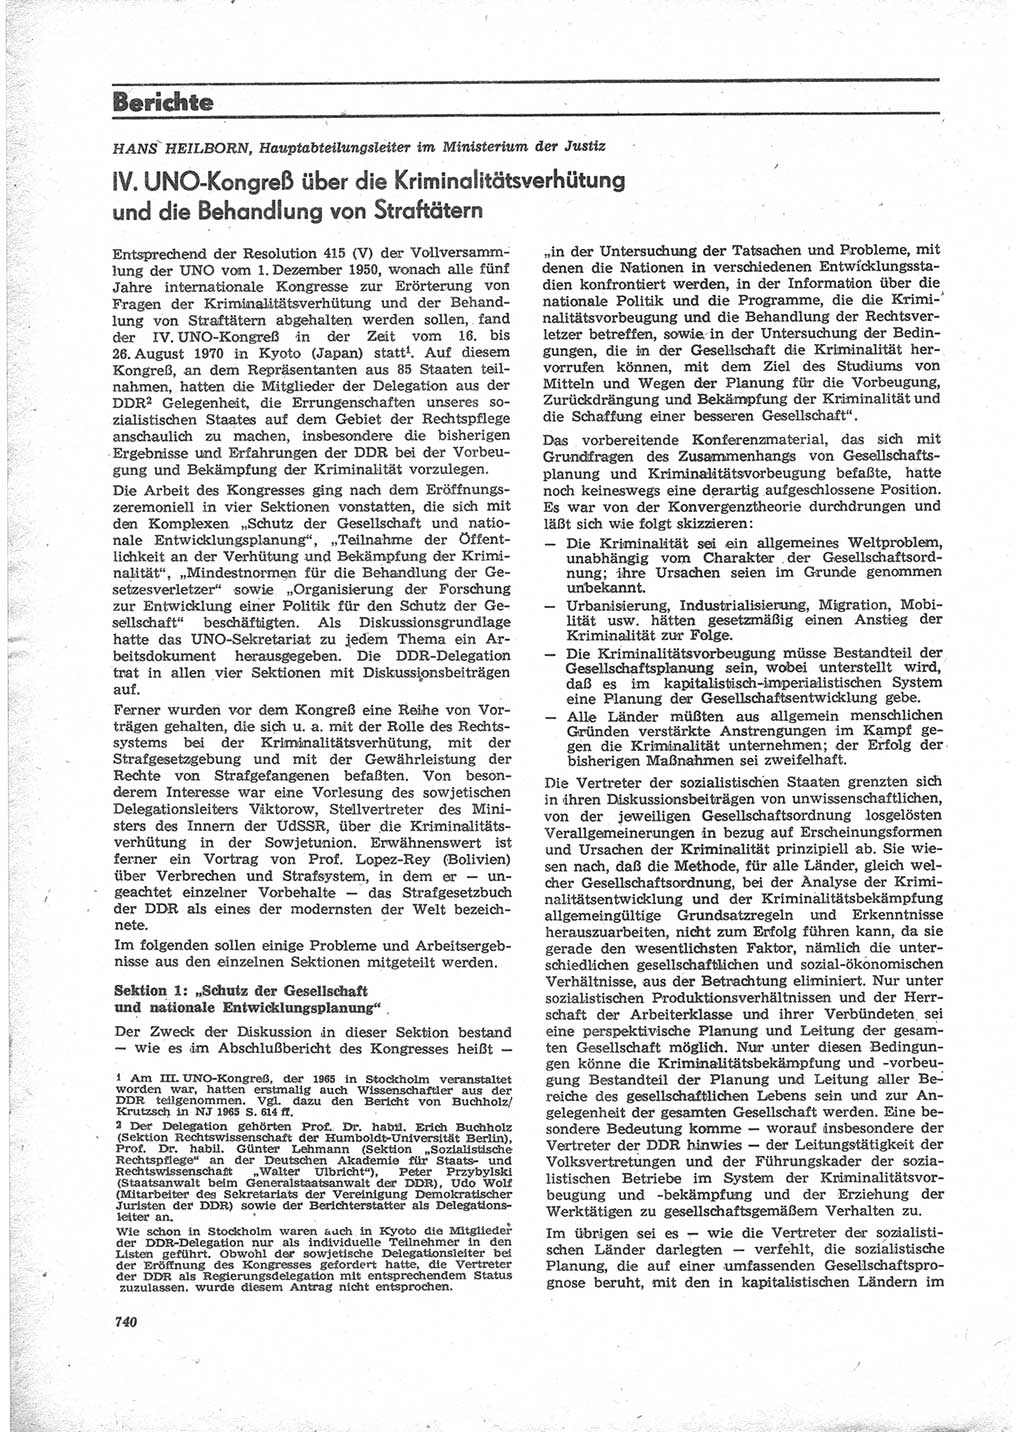 Neue Justiz (NJ), Zeitschrift für Recht und Rechtswissenschaft [Deutsche Demokratische Republik (DDR)], 24. Jahrgang 1970, Seite 740 (NJ DDR 1970, S. 740)